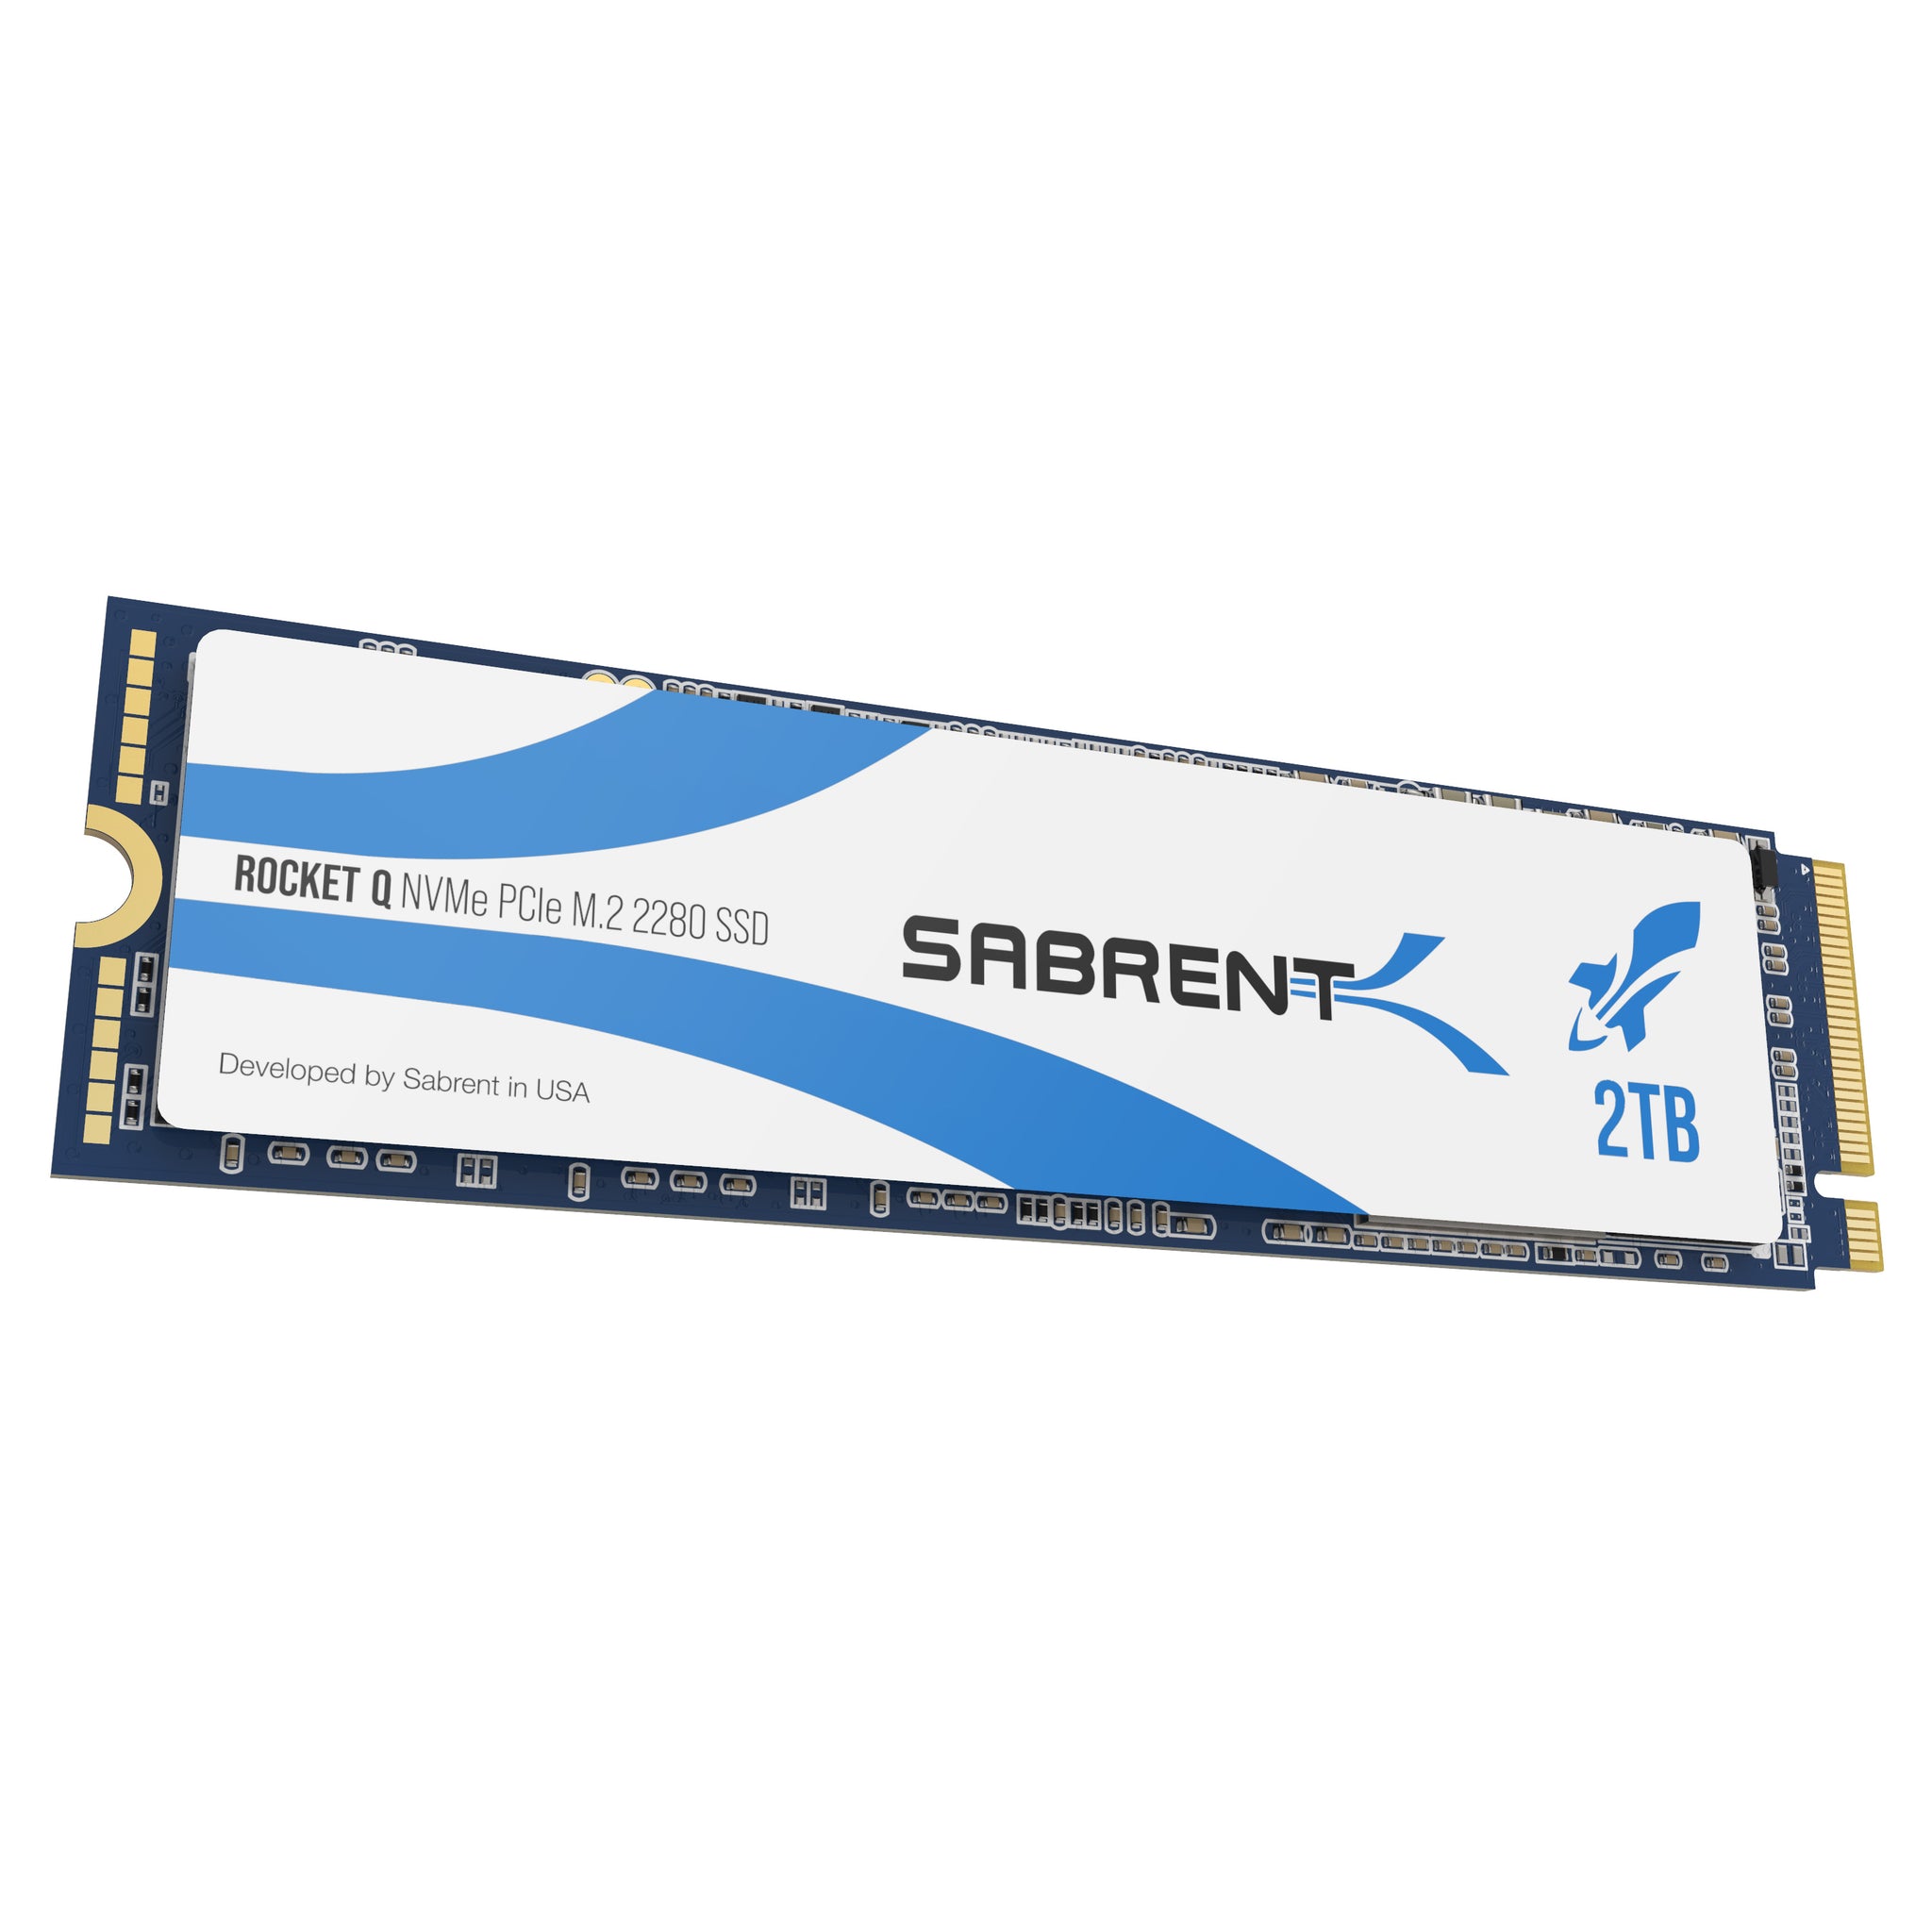 Rocket Q NVMe SSD - Sabrent